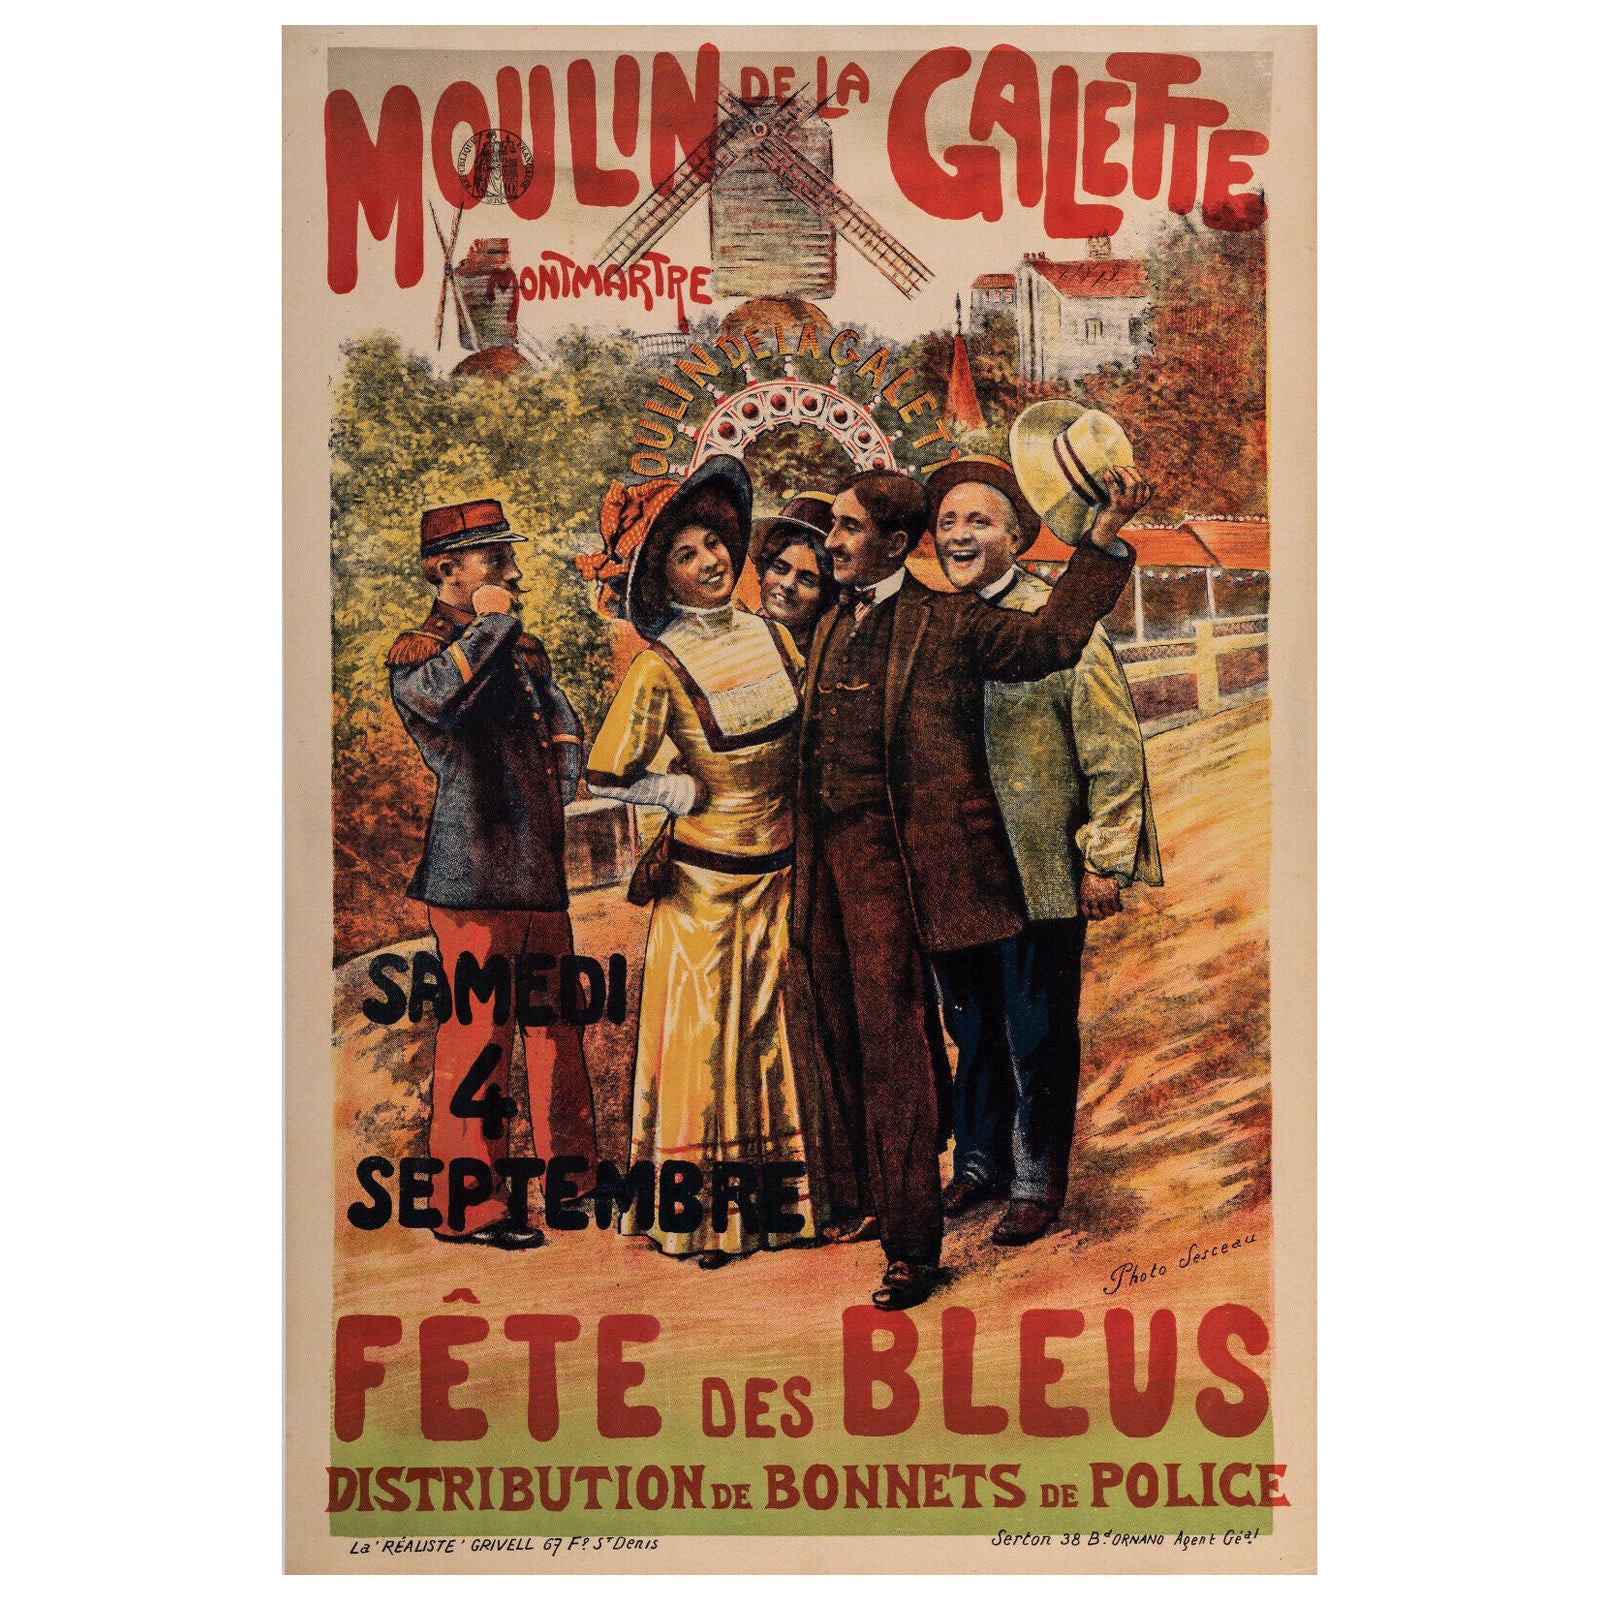 Original Poster-Paul Sescau-Moulin De La Galette-Toulouse-Lautrec, 1897